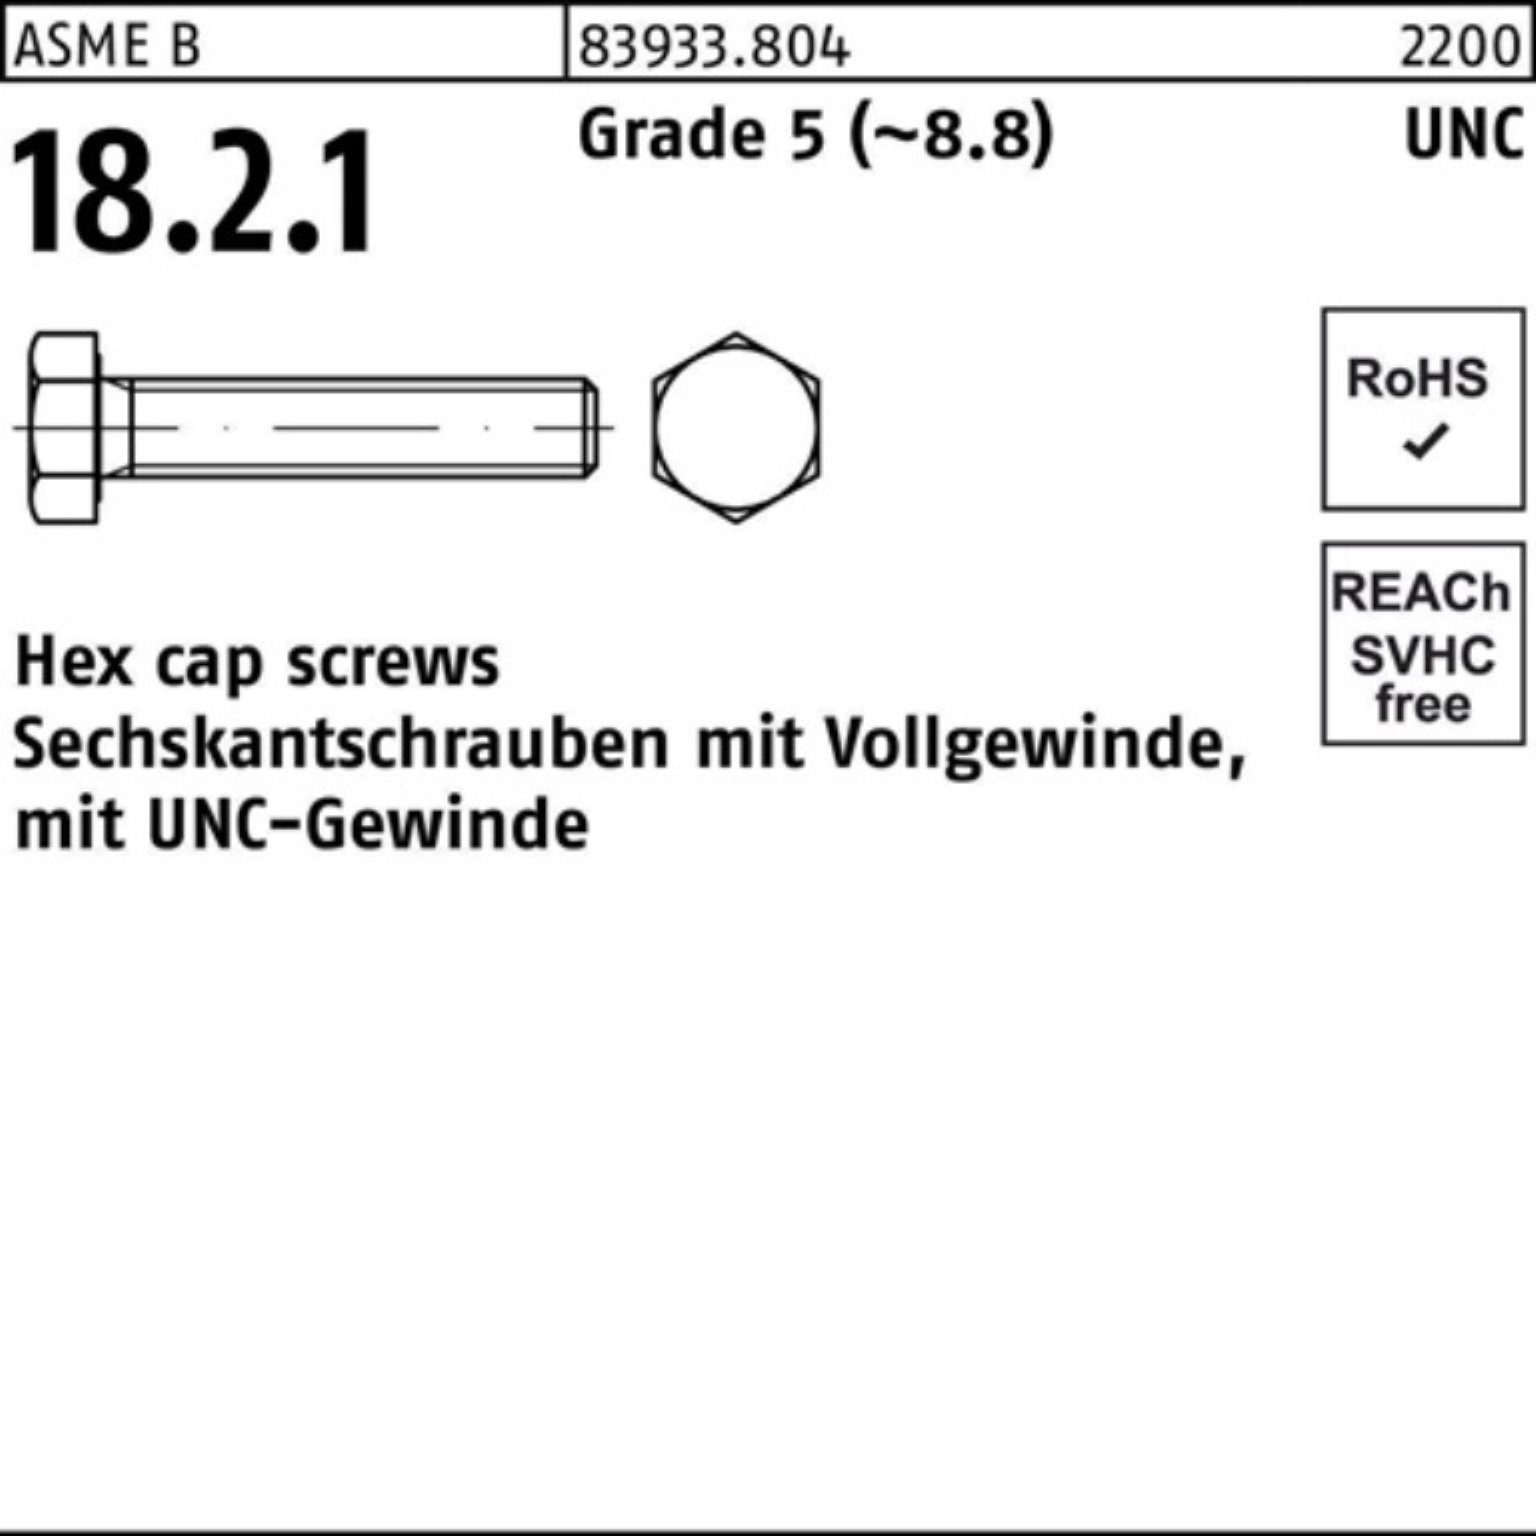 Pack VG Sechskantschraube 100er Sechskantschraube Grade 5 Reyher UNC-Gewinde 1/4x R 7/8 83933